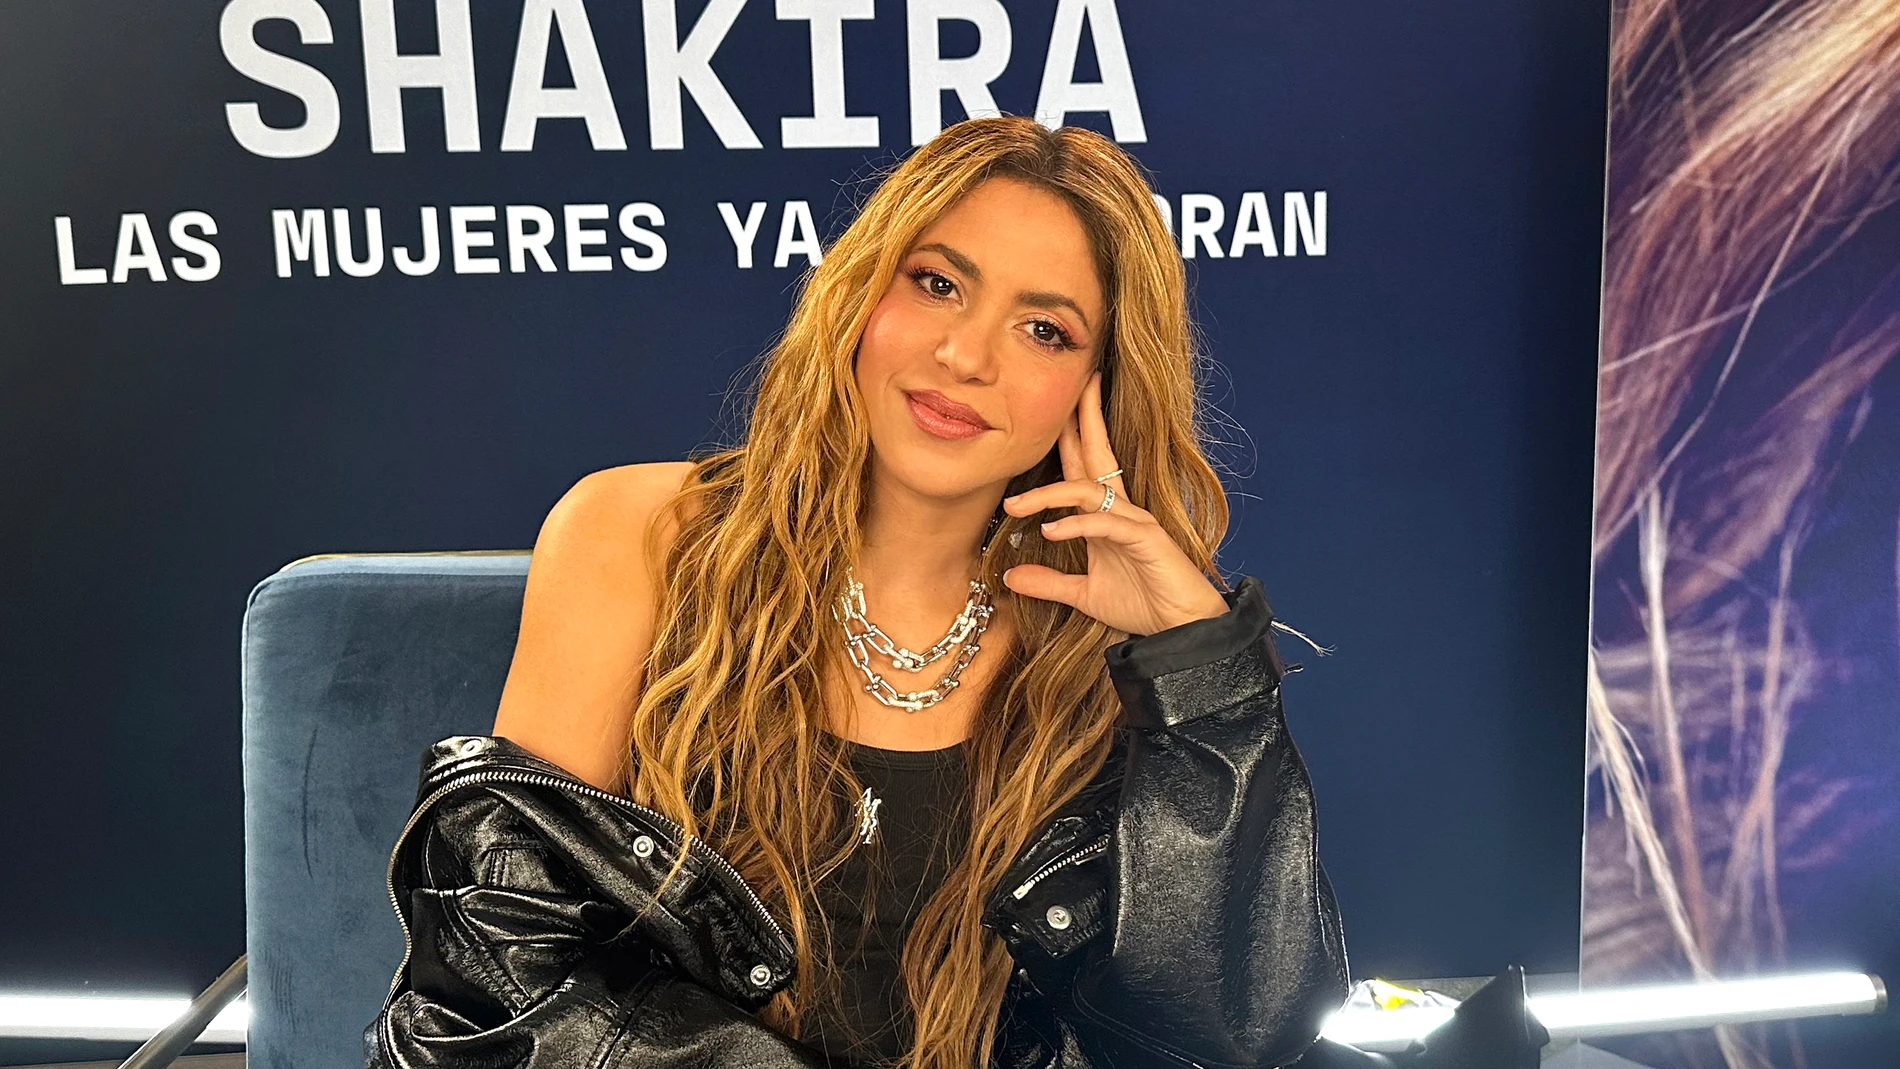 USA3336. HOLLYWOOD (FL, EEUU), 23/03/2024.- La cantante colombiana Shakira posa para EFE durante una entrevista este viernes en el Hard Rock Hotel & Casino en Hollywood, en las afueras de Miami, Florida (Estados Unidos). Con la salida al mercado de su décimo segundo álbum 'Las mujeres ya no lloran', Shakira despidió la etapa "más dura" de su vida y abraza ahora con desenfado y cierto orgullo una nueva era de romance, sensualidad, libertad y poderío. EFE/ Alicia Civita 